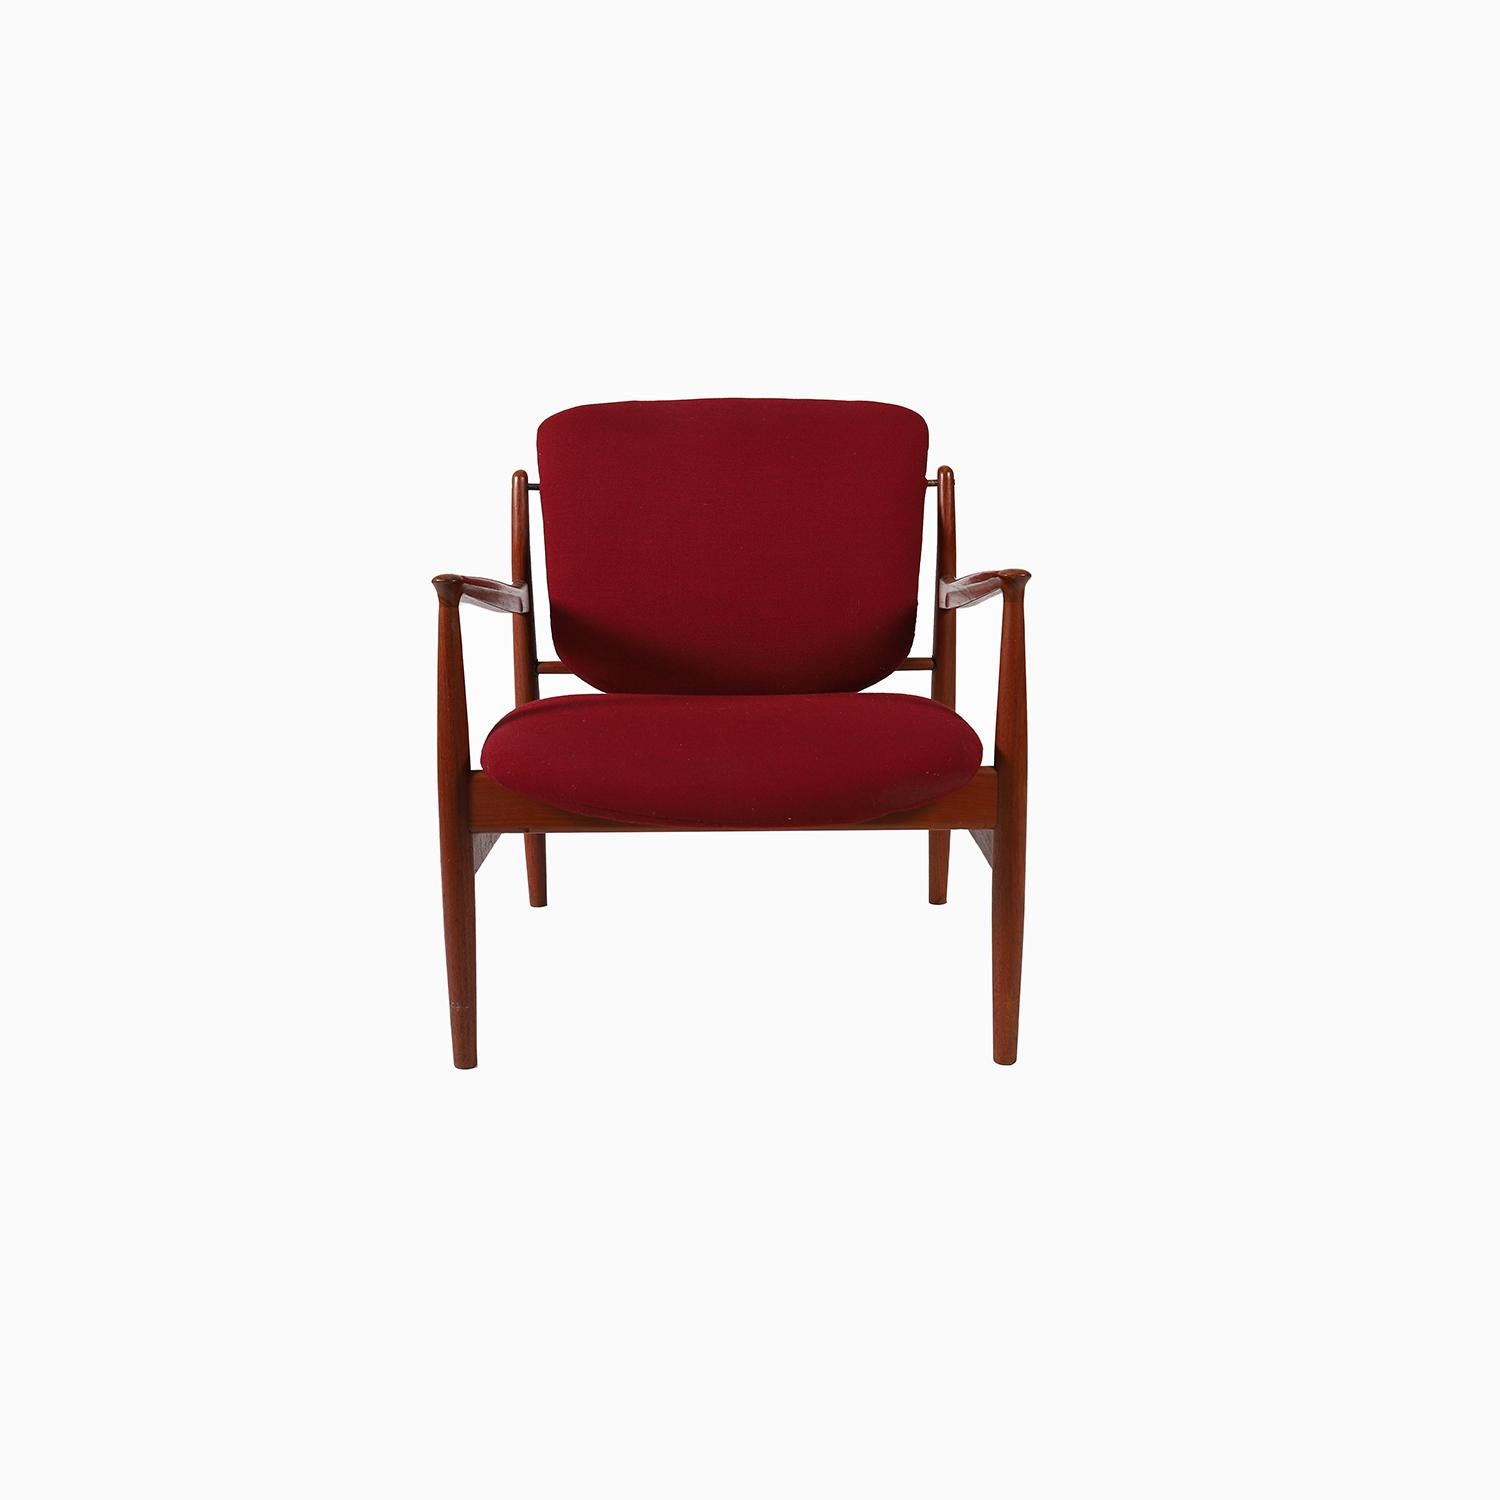 
Le salon france a été conçu par Finn Juhls dans les années 1950 et produit au Danemark par France & Daverkorsen.  cette chaise est un exemple ancien de ce design et elle est en excellent état.  les accoudoirs sculpturaux s'affinent jusqu'à